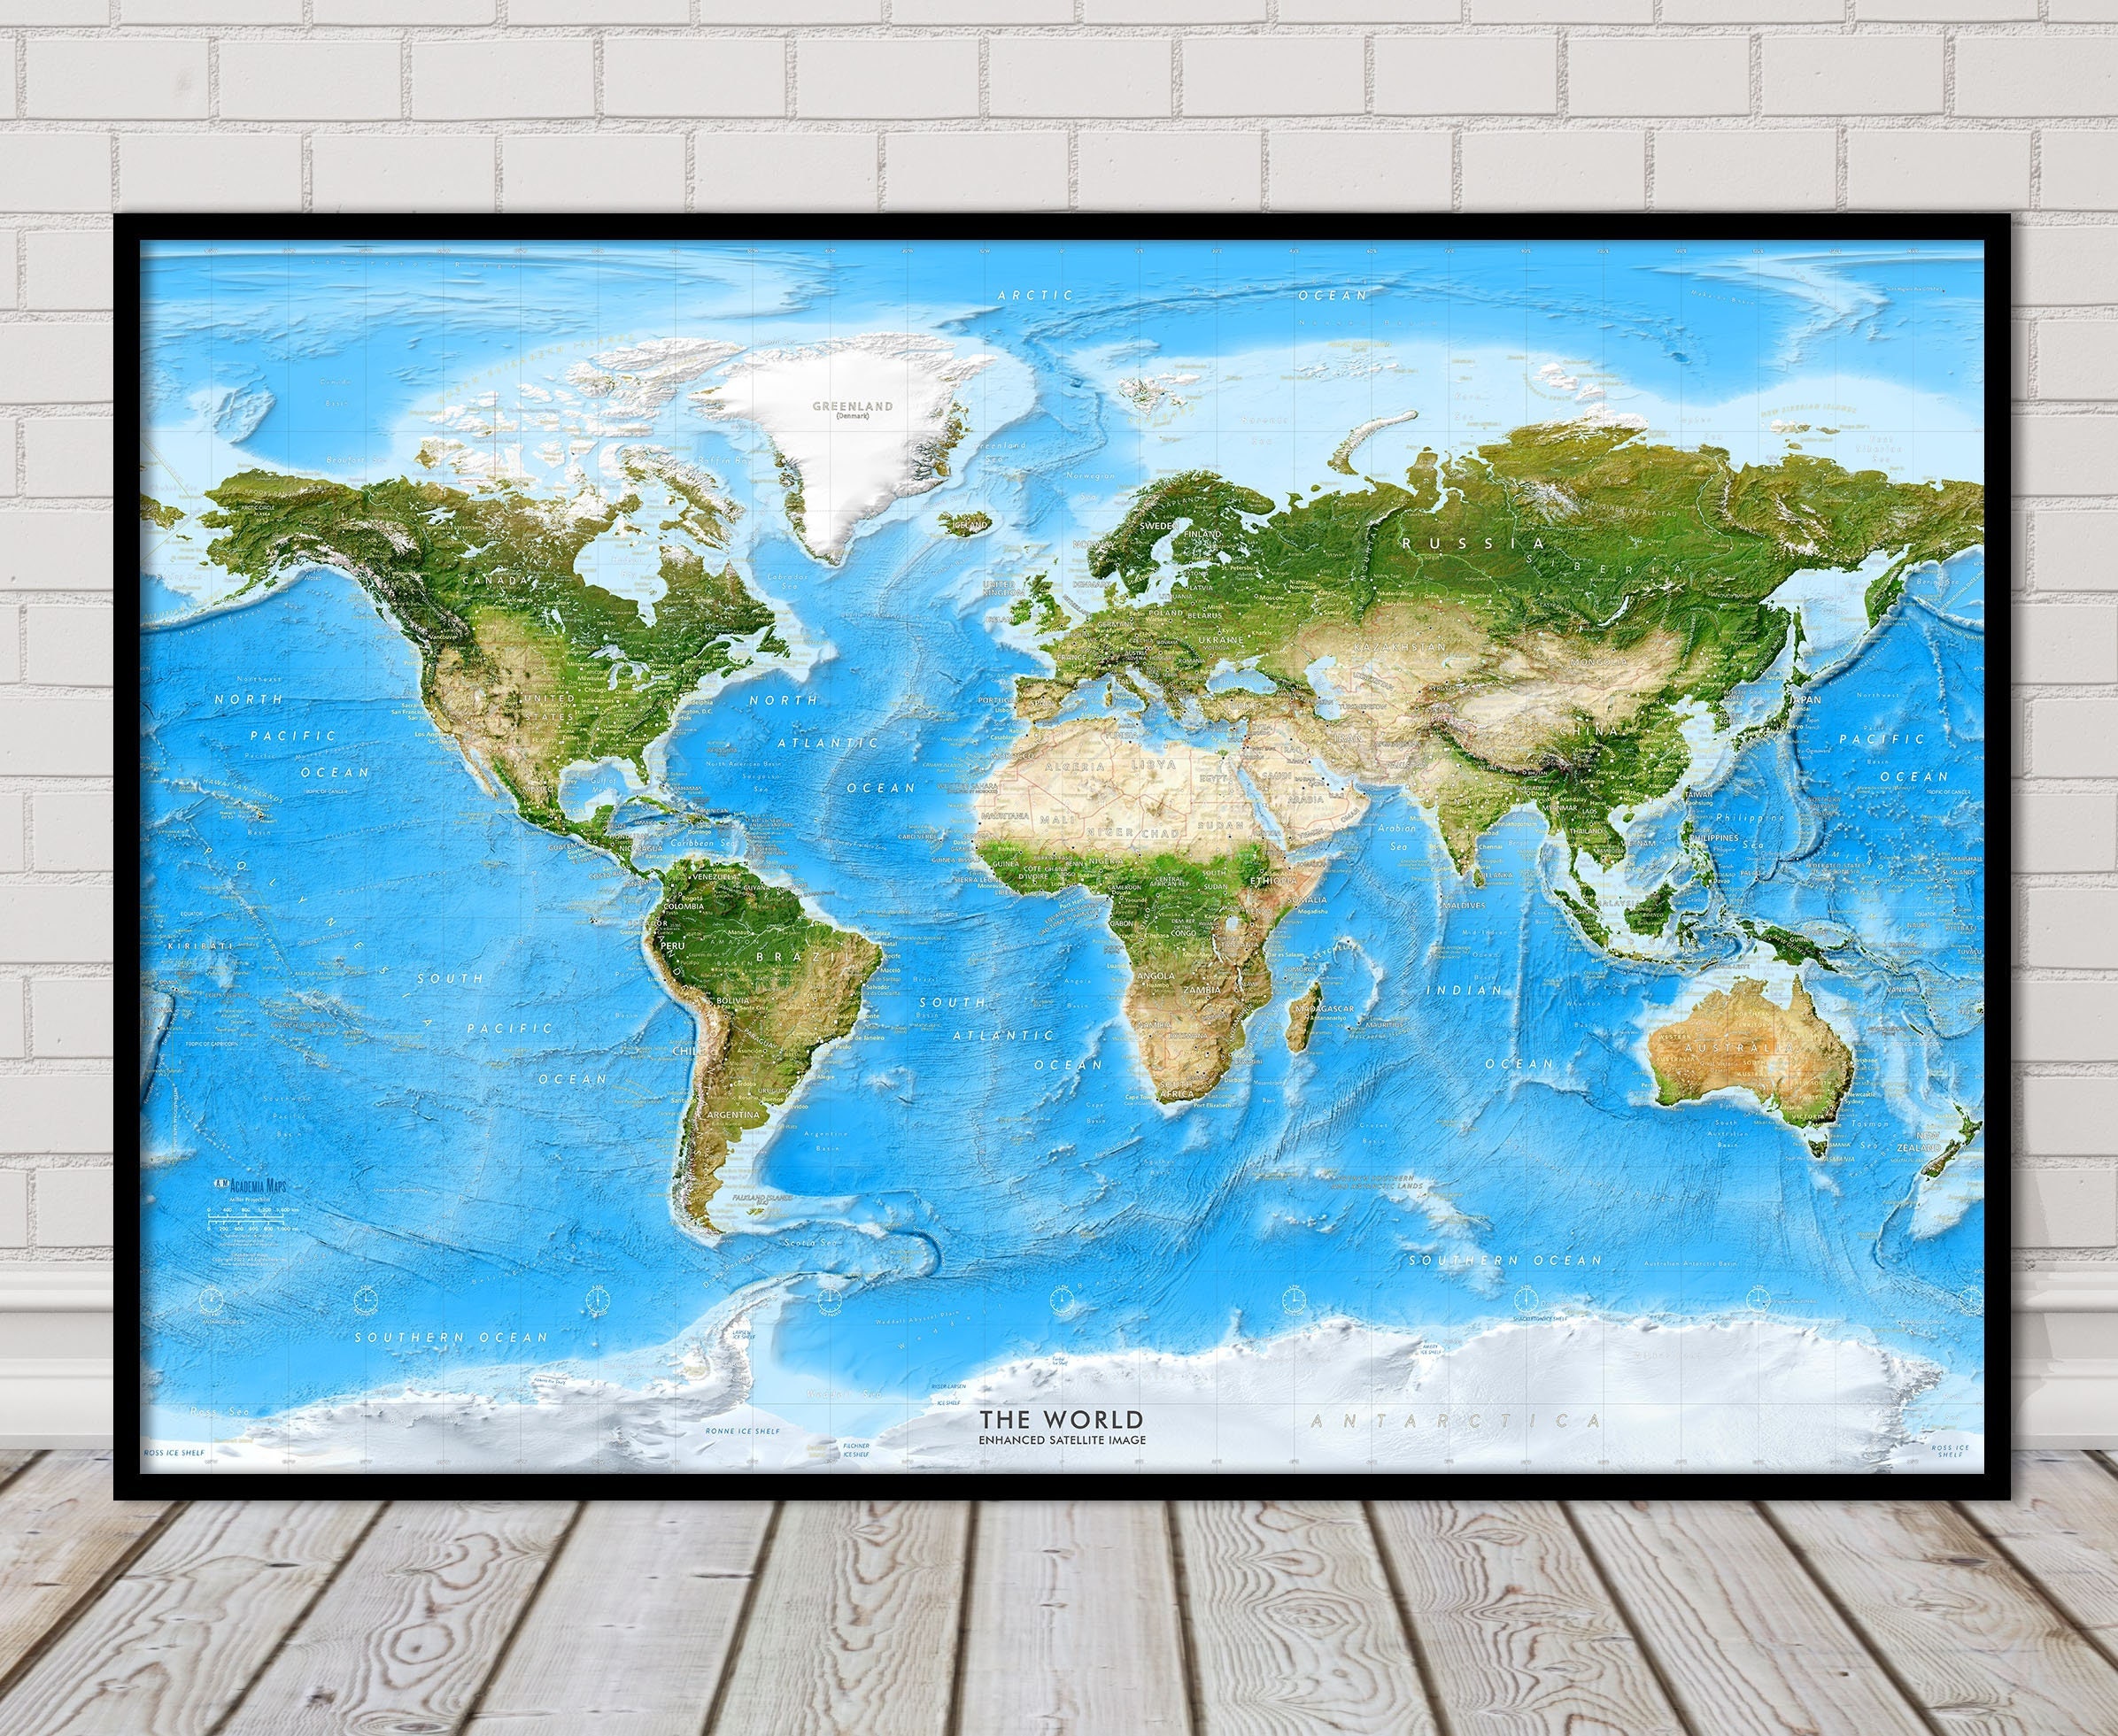 Mappa da parete con immagine satellitare del mondo migliorata/stampa poster  con mappa del mondo grande mappa del mondo fisico in rilievo  ombreggiato/stampa artistica su tela con mappa del mondo -  Italia